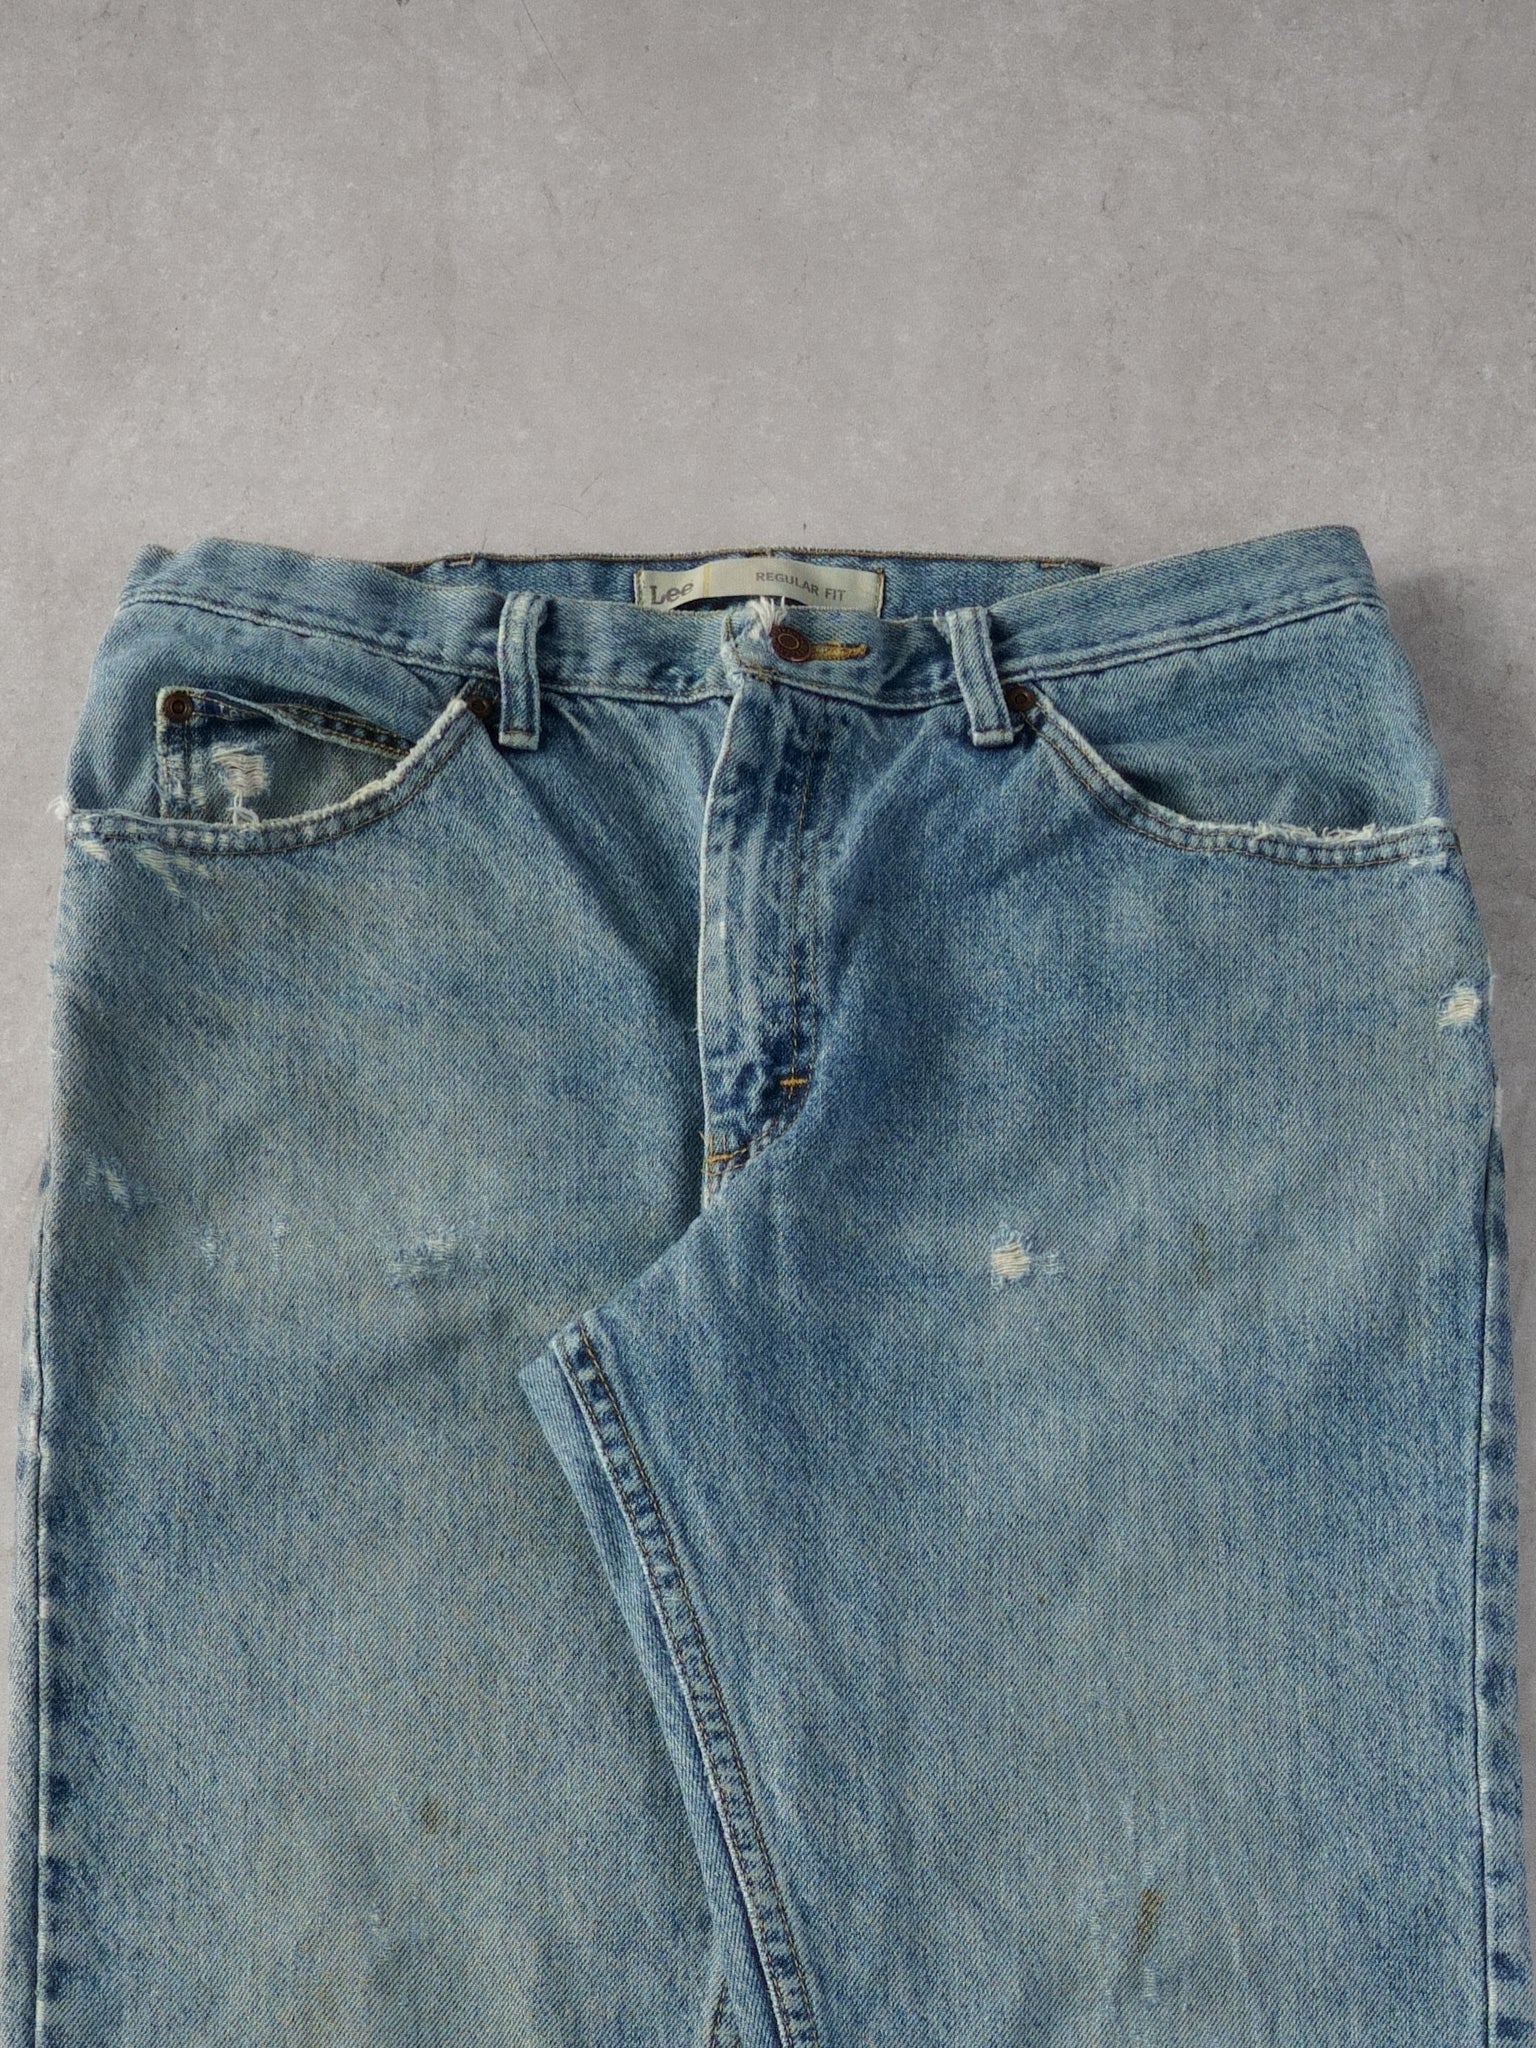 Vintage 90s Light Blue Lee Regular Fit Denim Jeans (34x30)